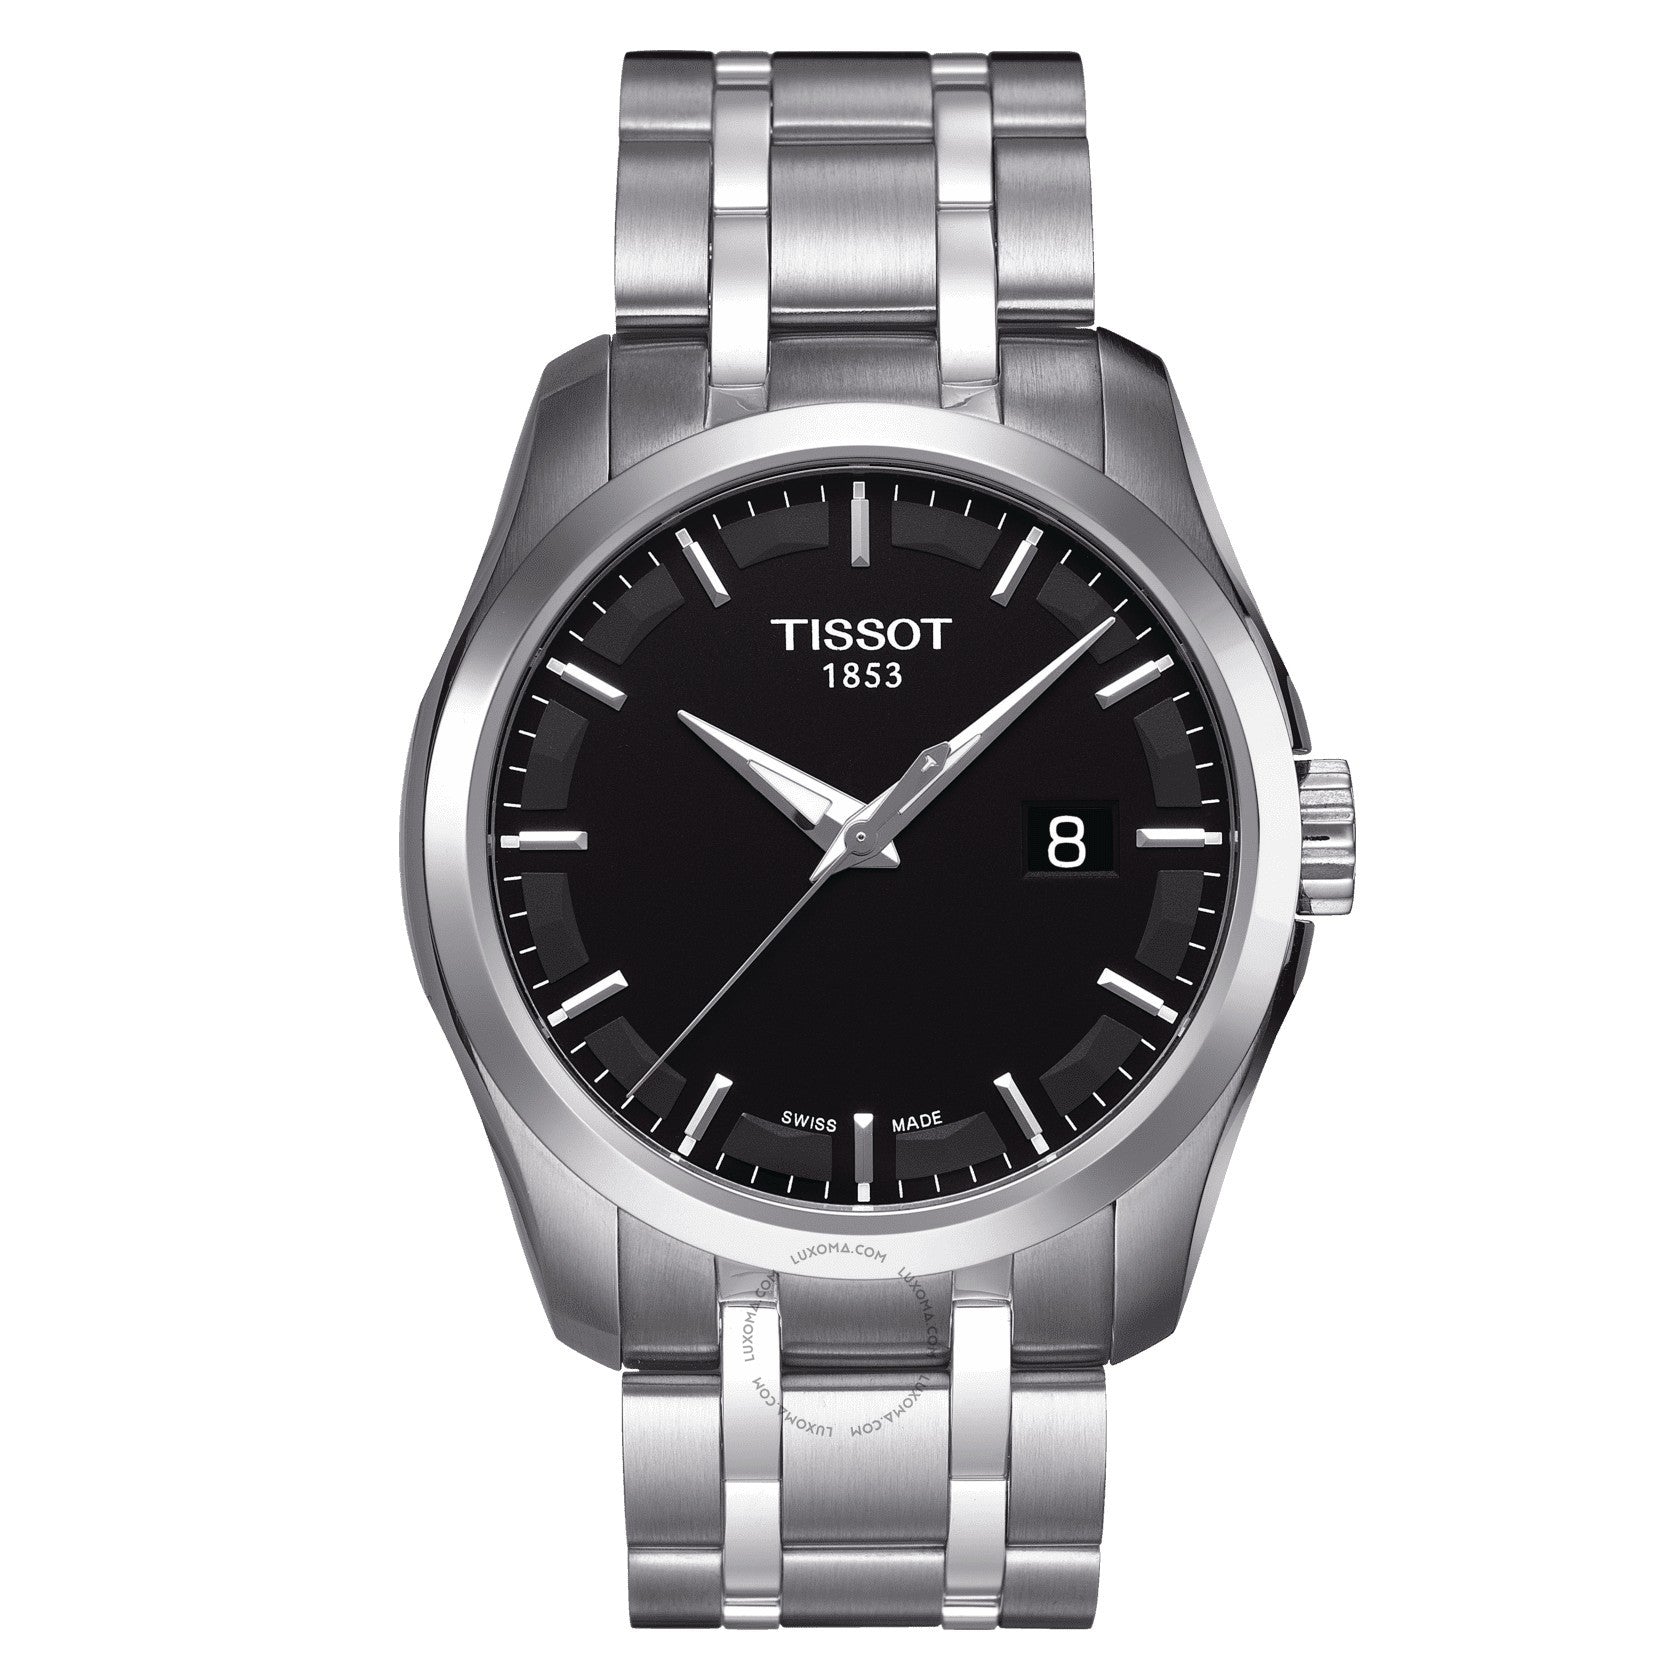 Tissot Couturier Quartz Black Dial Men's Watch T035.410.11.051.00